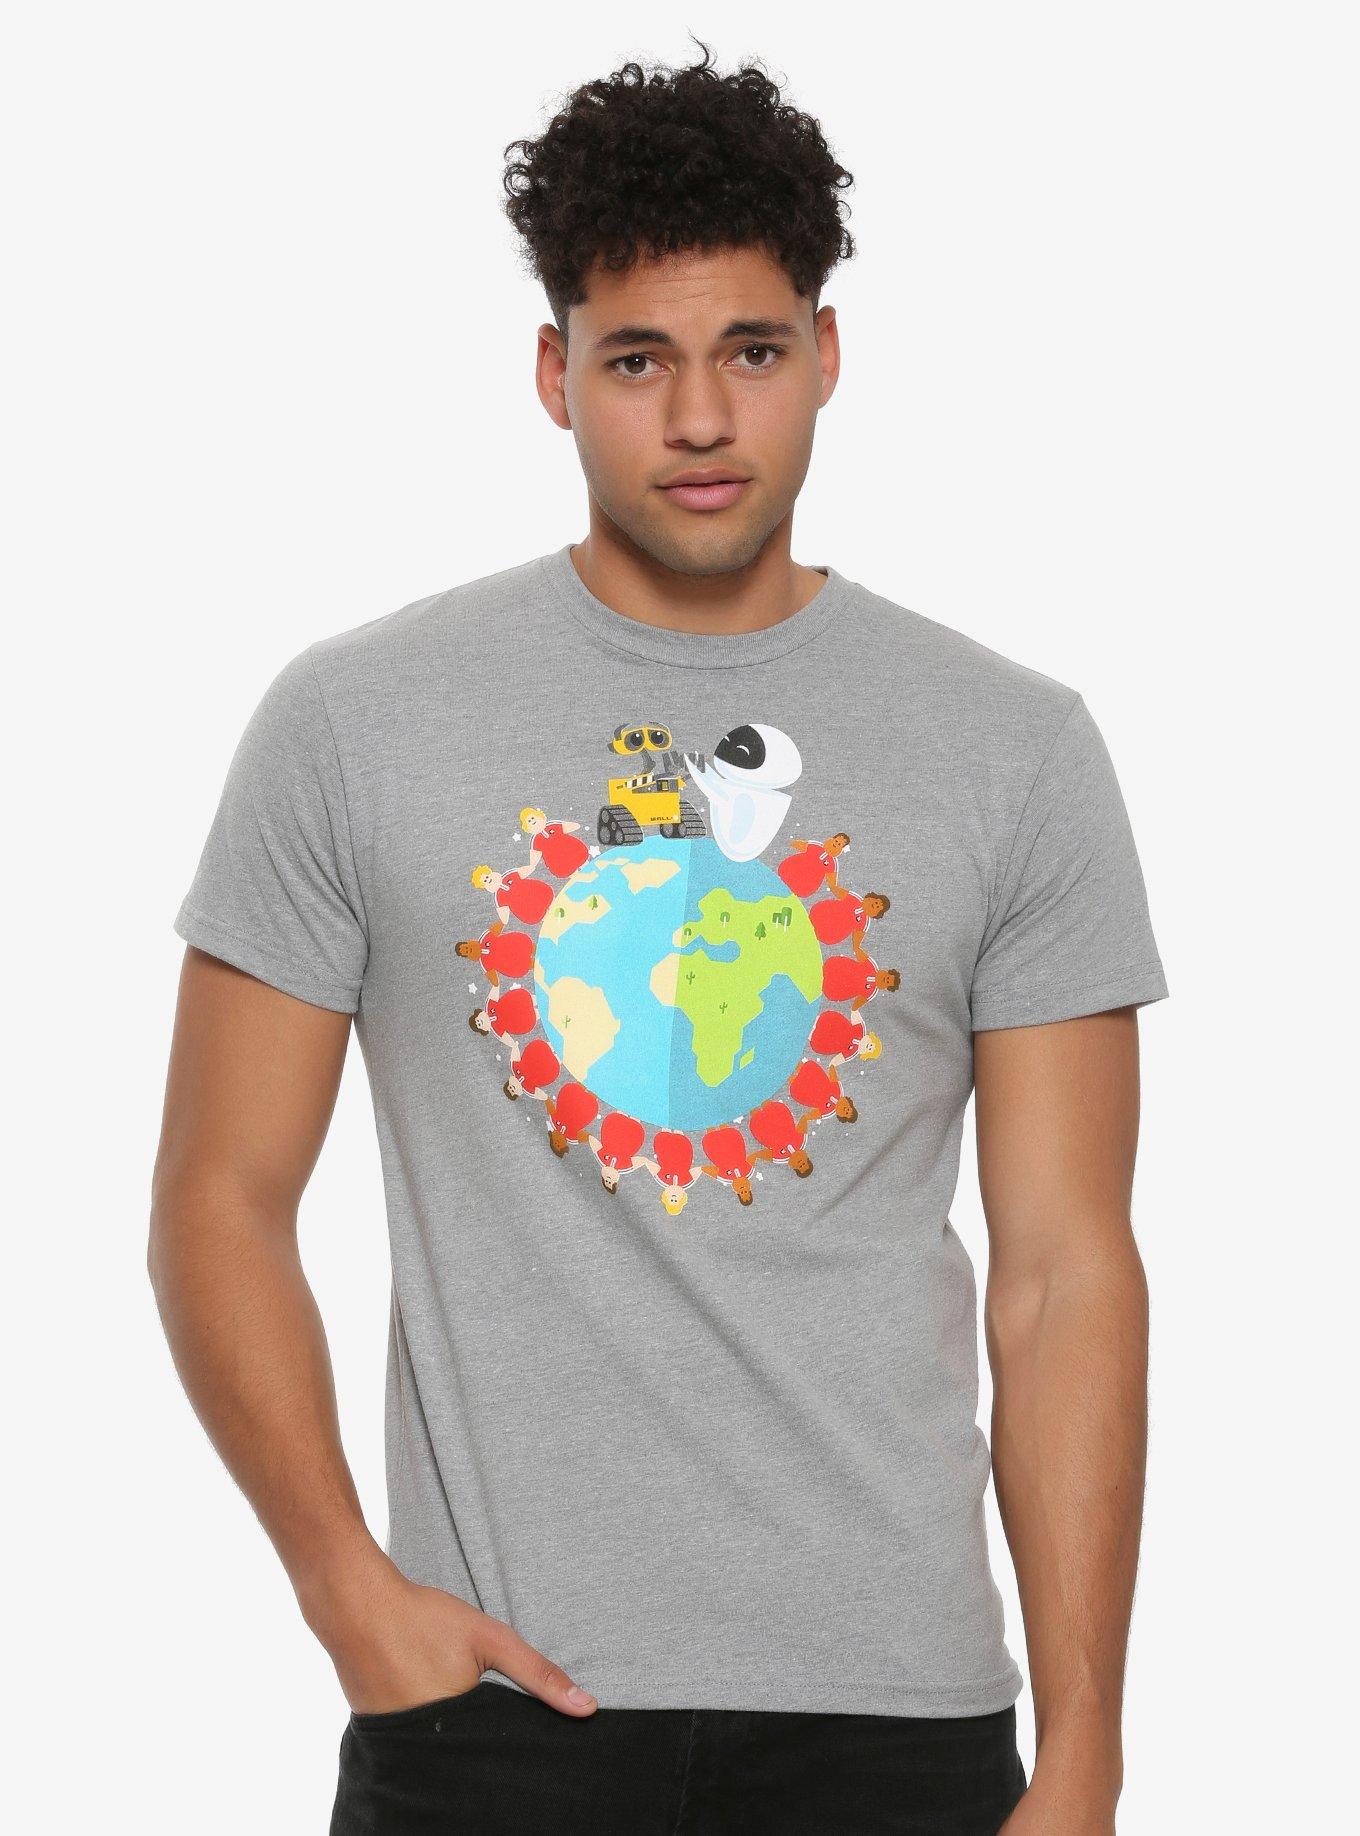 Disney Pixar WALL-E All Over the World T-Shirt, GREY, hi-res